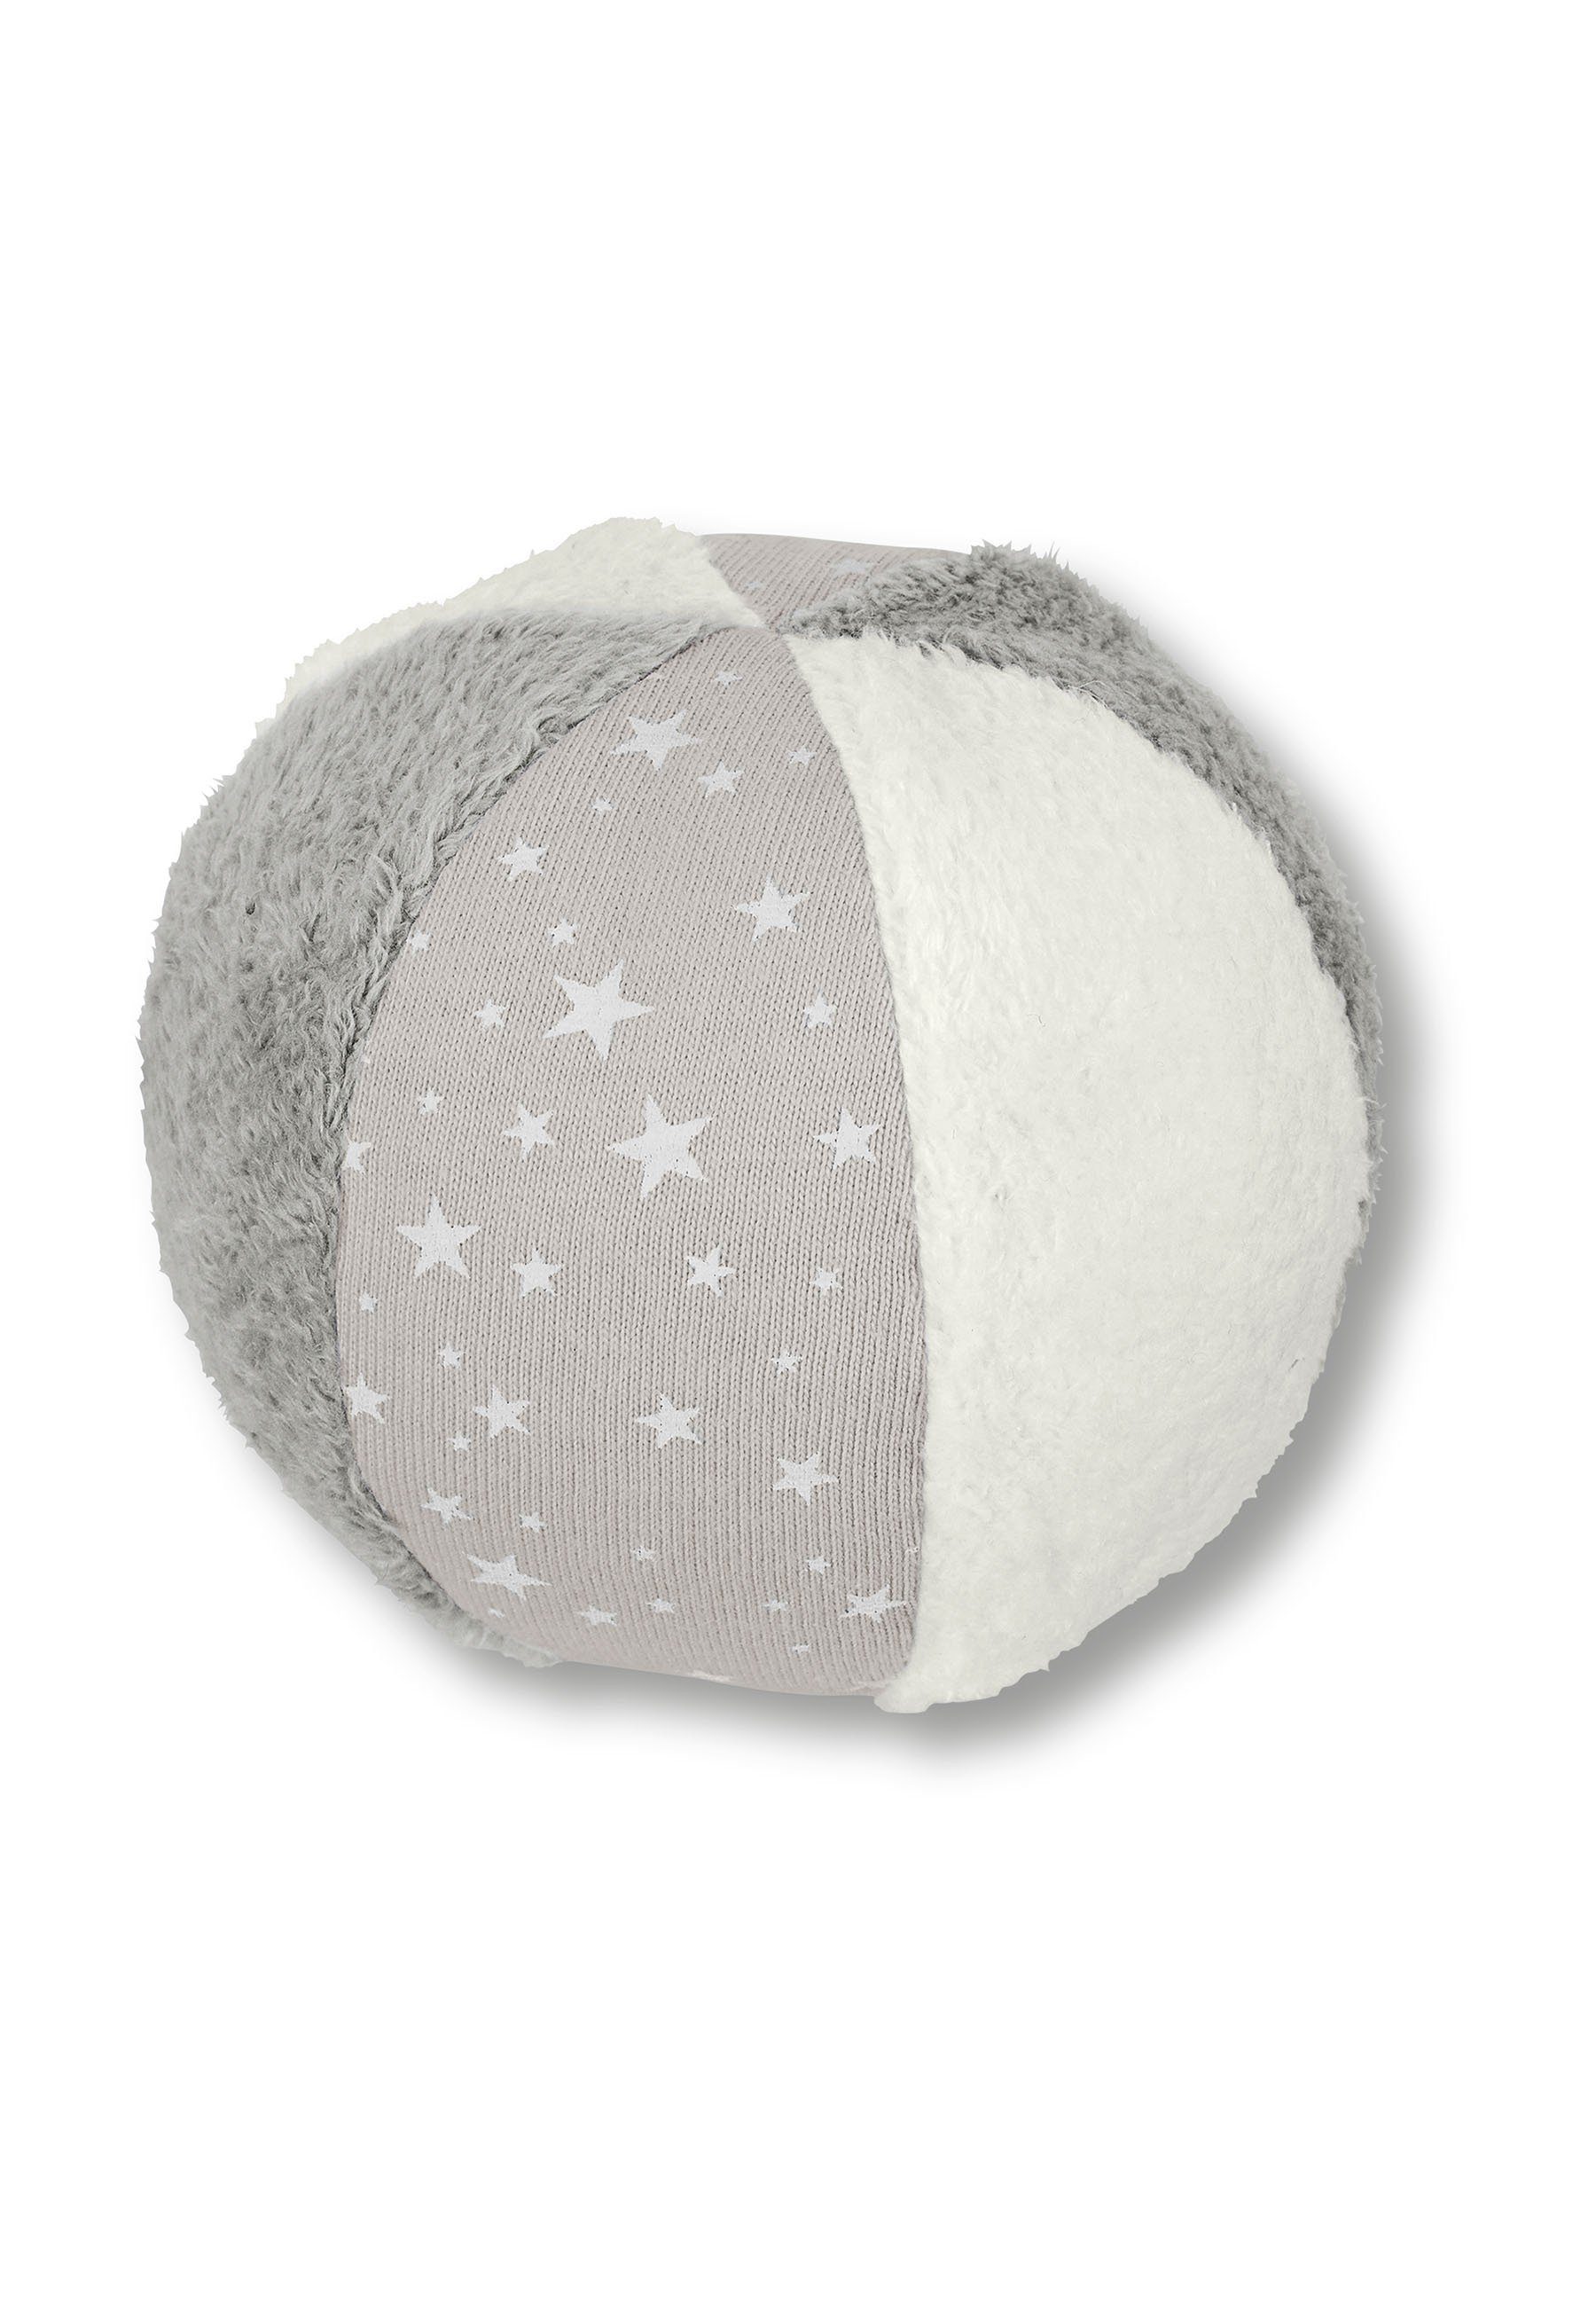 Sterntaler® Spielball Ball grau, Spielball - Baby Ball in Grau 9 cm groß  mit Rassel - Weicher Babyball im Materialmix aus Baumwolle und Polyester -  fühlen, rollen, hören, krabbeln - Bälle für Kinder gemustert Bälle | Softbälle